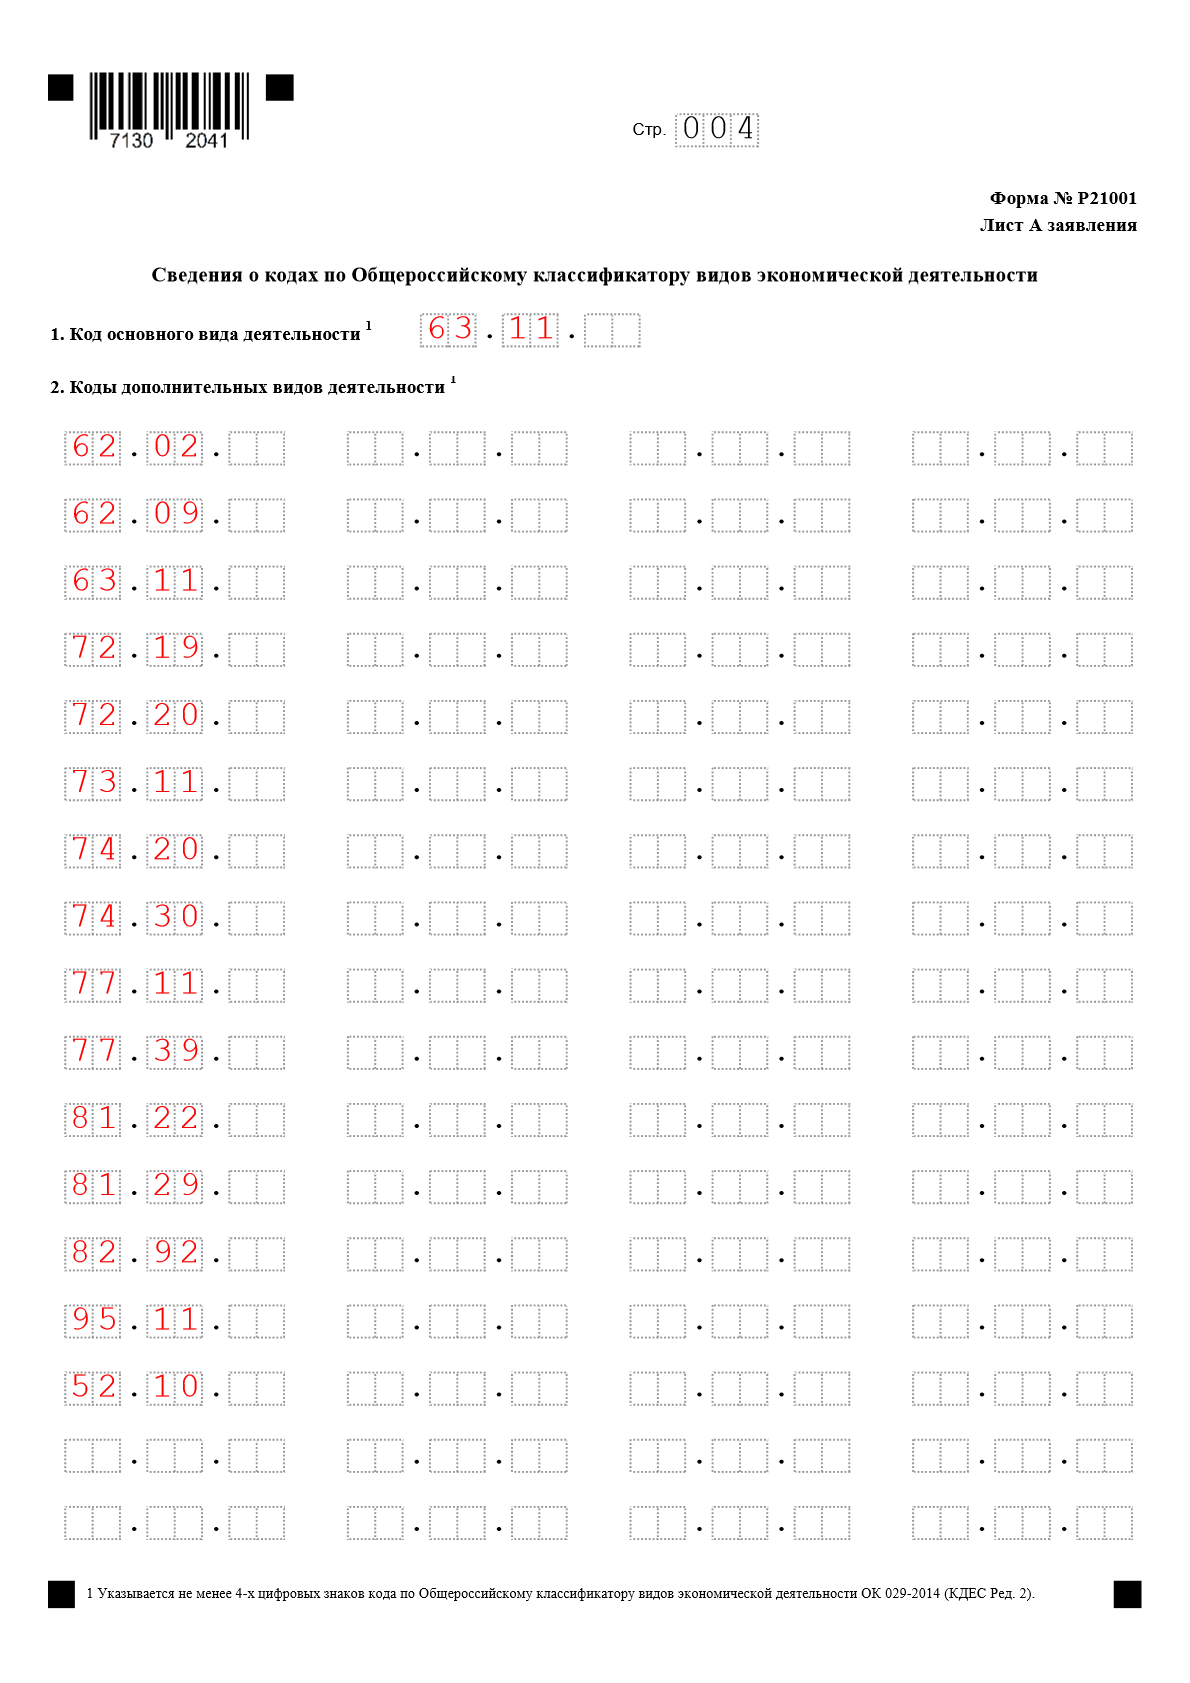 Заявление на регистрацию ИП Лист А Сведения о кодах по Общероссийскому классификатору видов экономической деятельности(ОКВЭД)